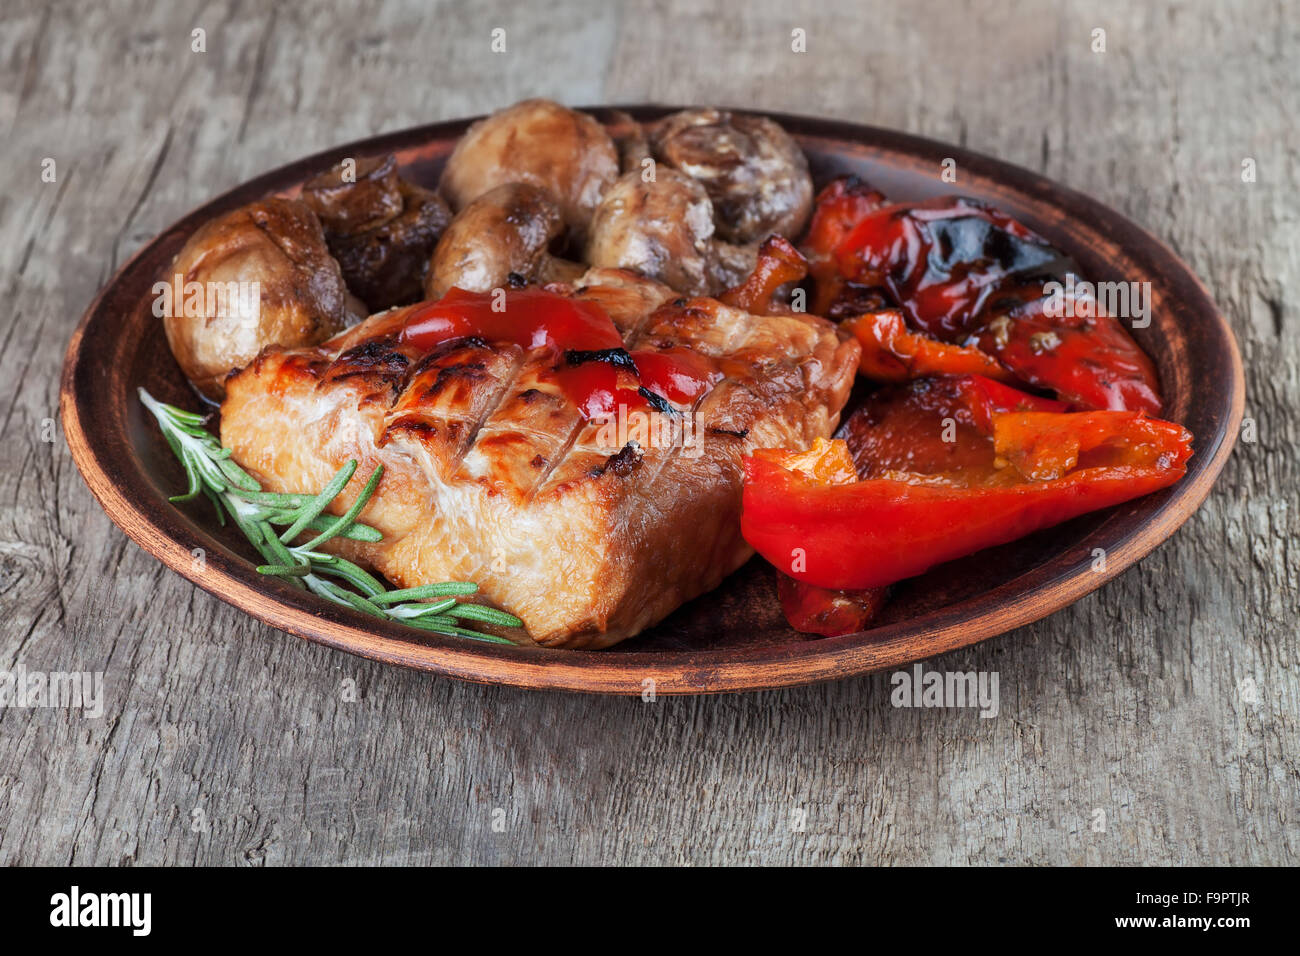 De délicieux plats de viande et de légumes cuits sur le barbecue Banque D'Images